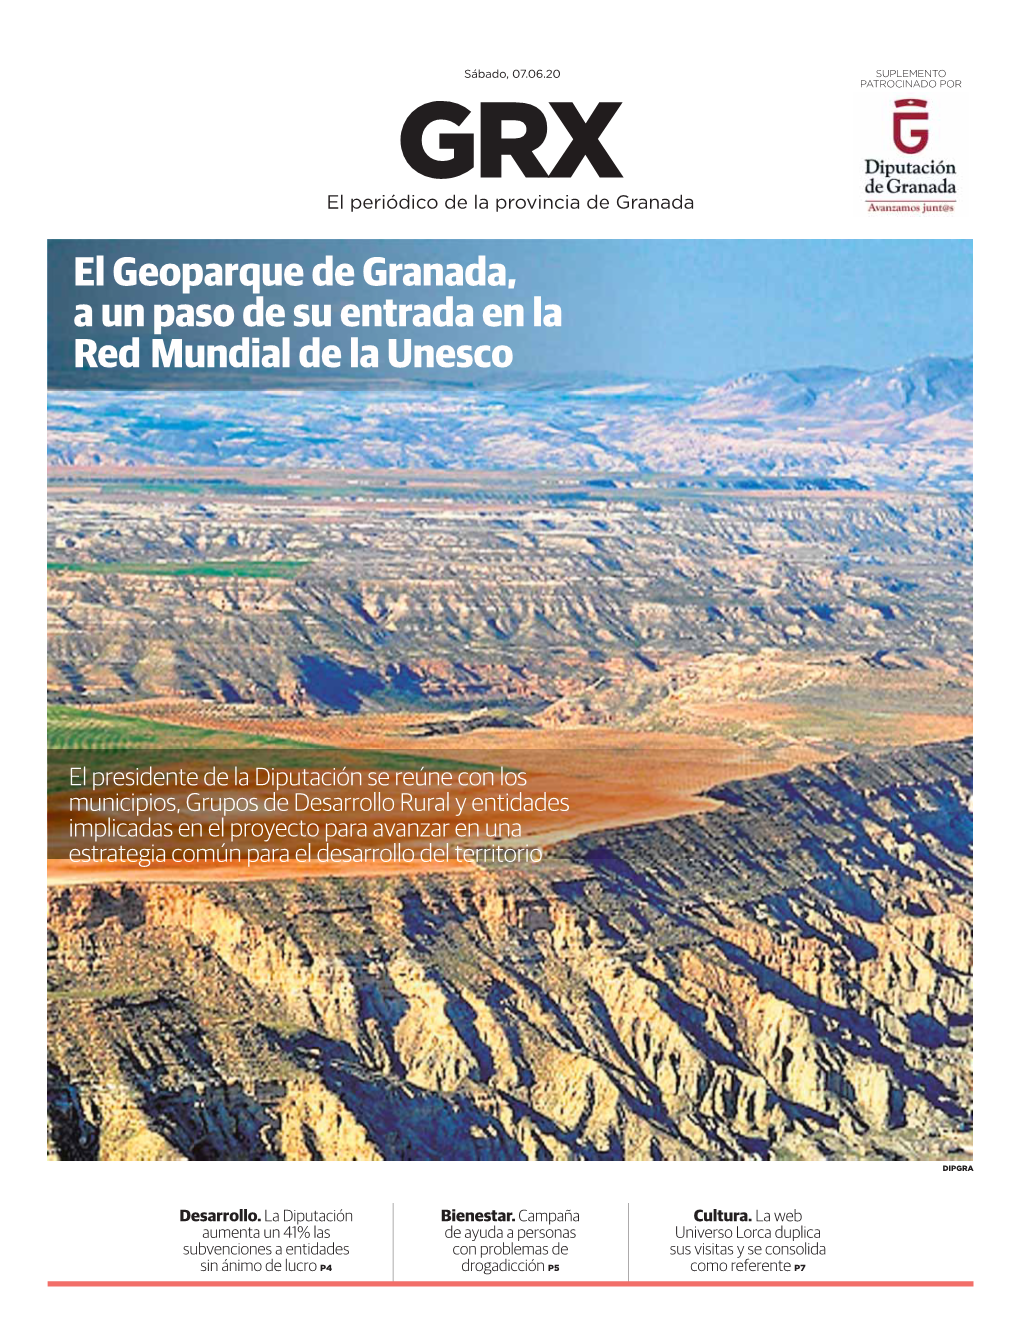 El Geoparque De Granada, a Un Paso De Su Entrada En La Red Mundial De La Unesco